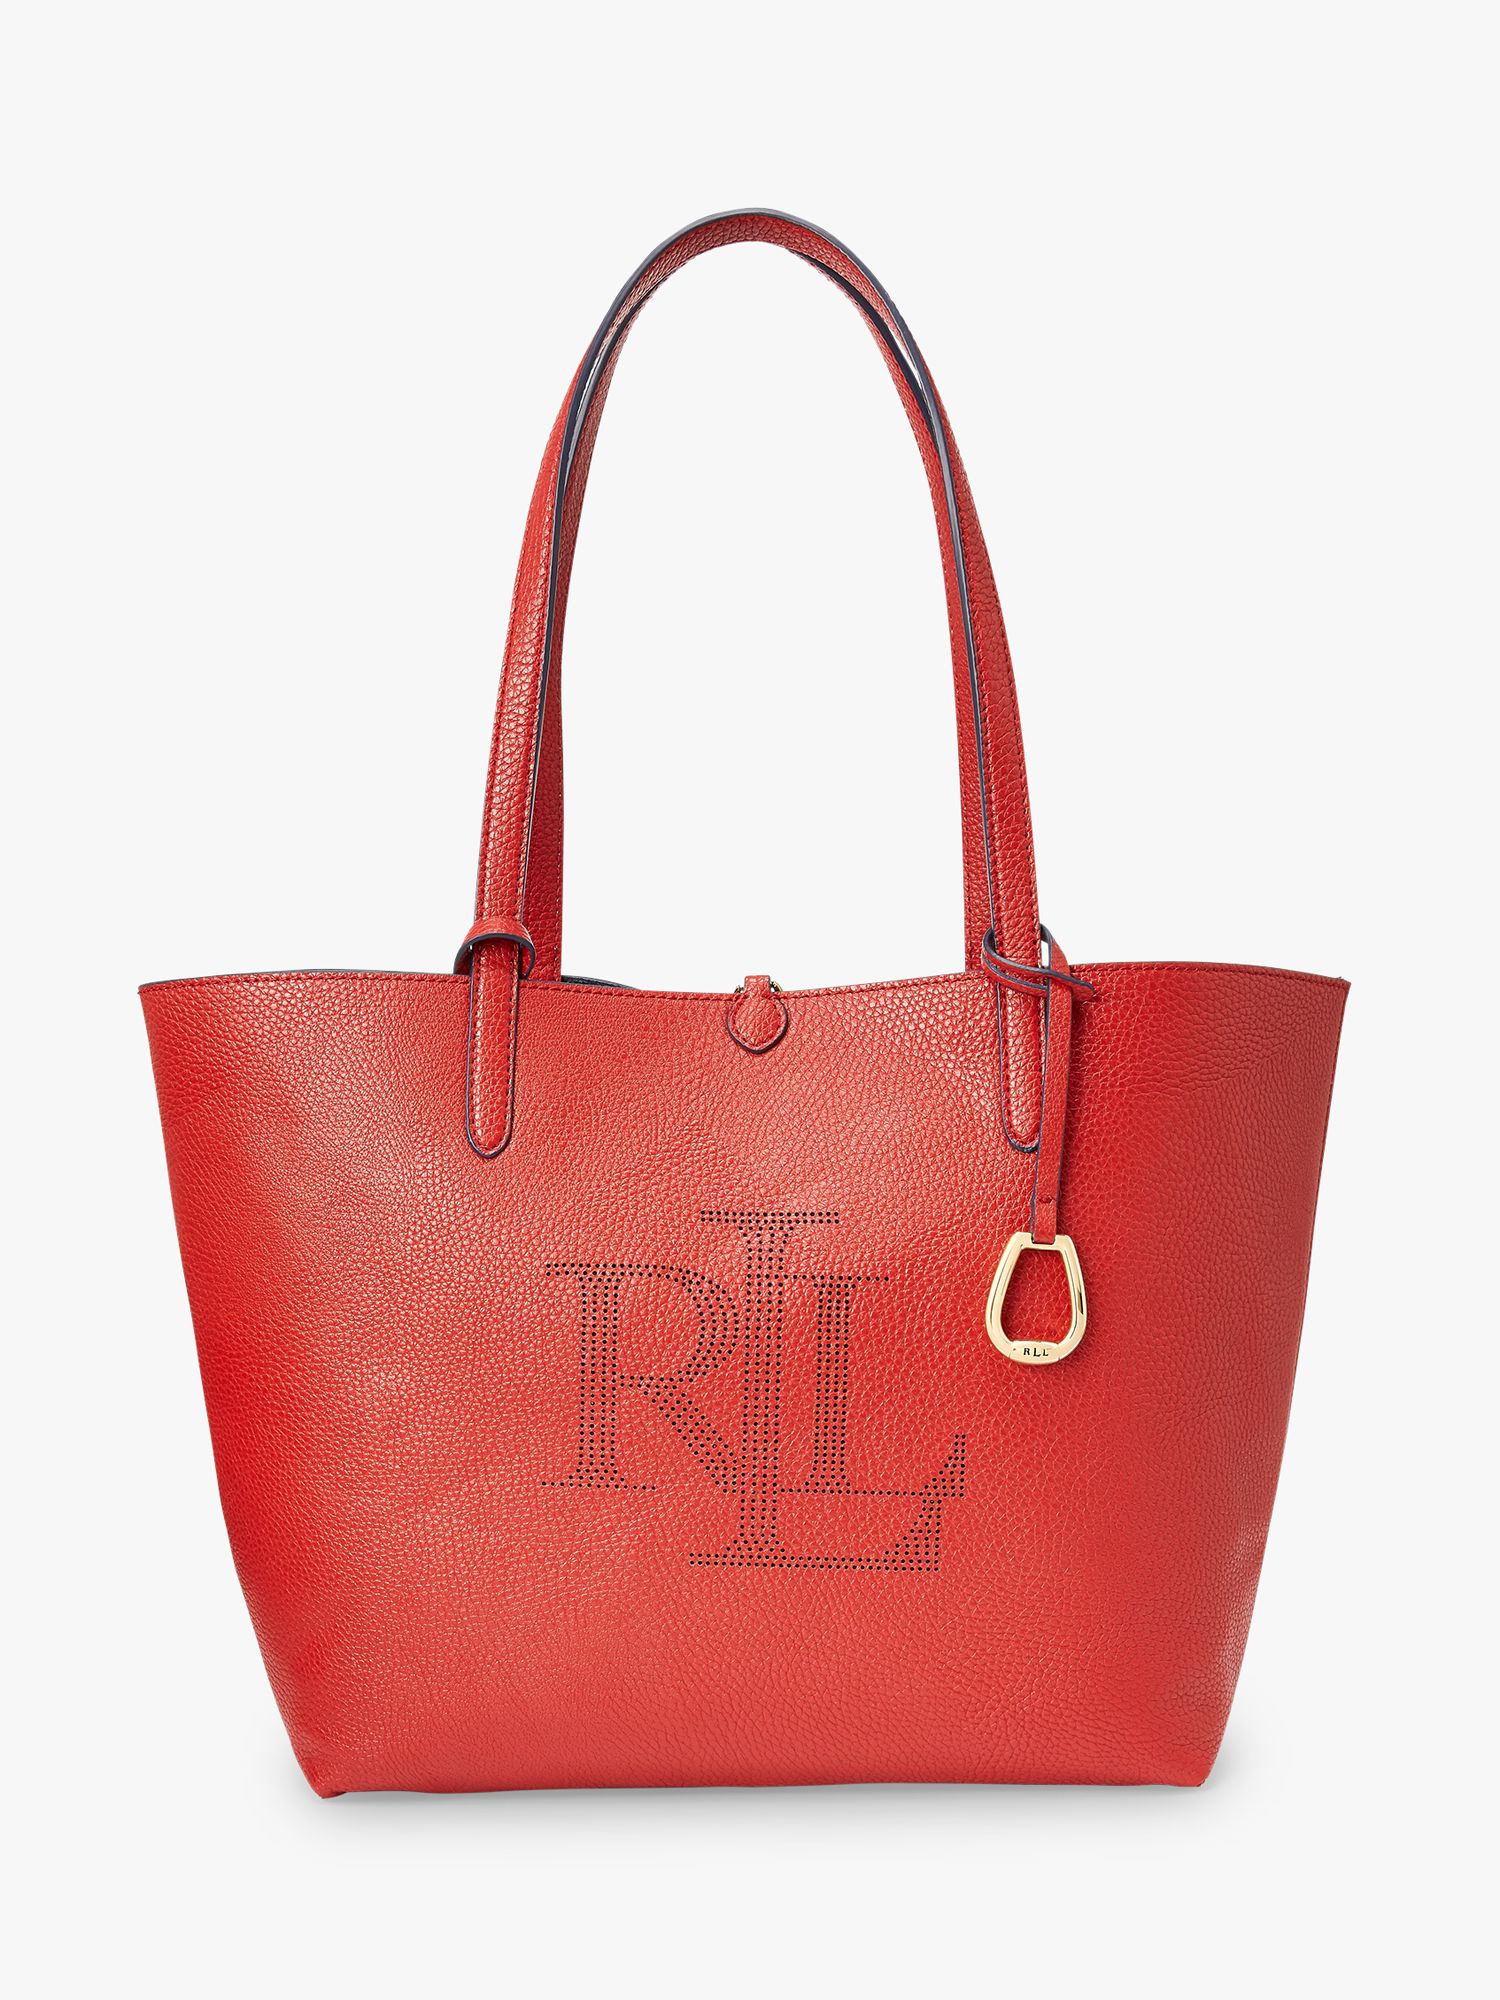 Lauren Ralph Lauren Merrimack Reversible Logo Tote Bag, Red/Lauren Navy